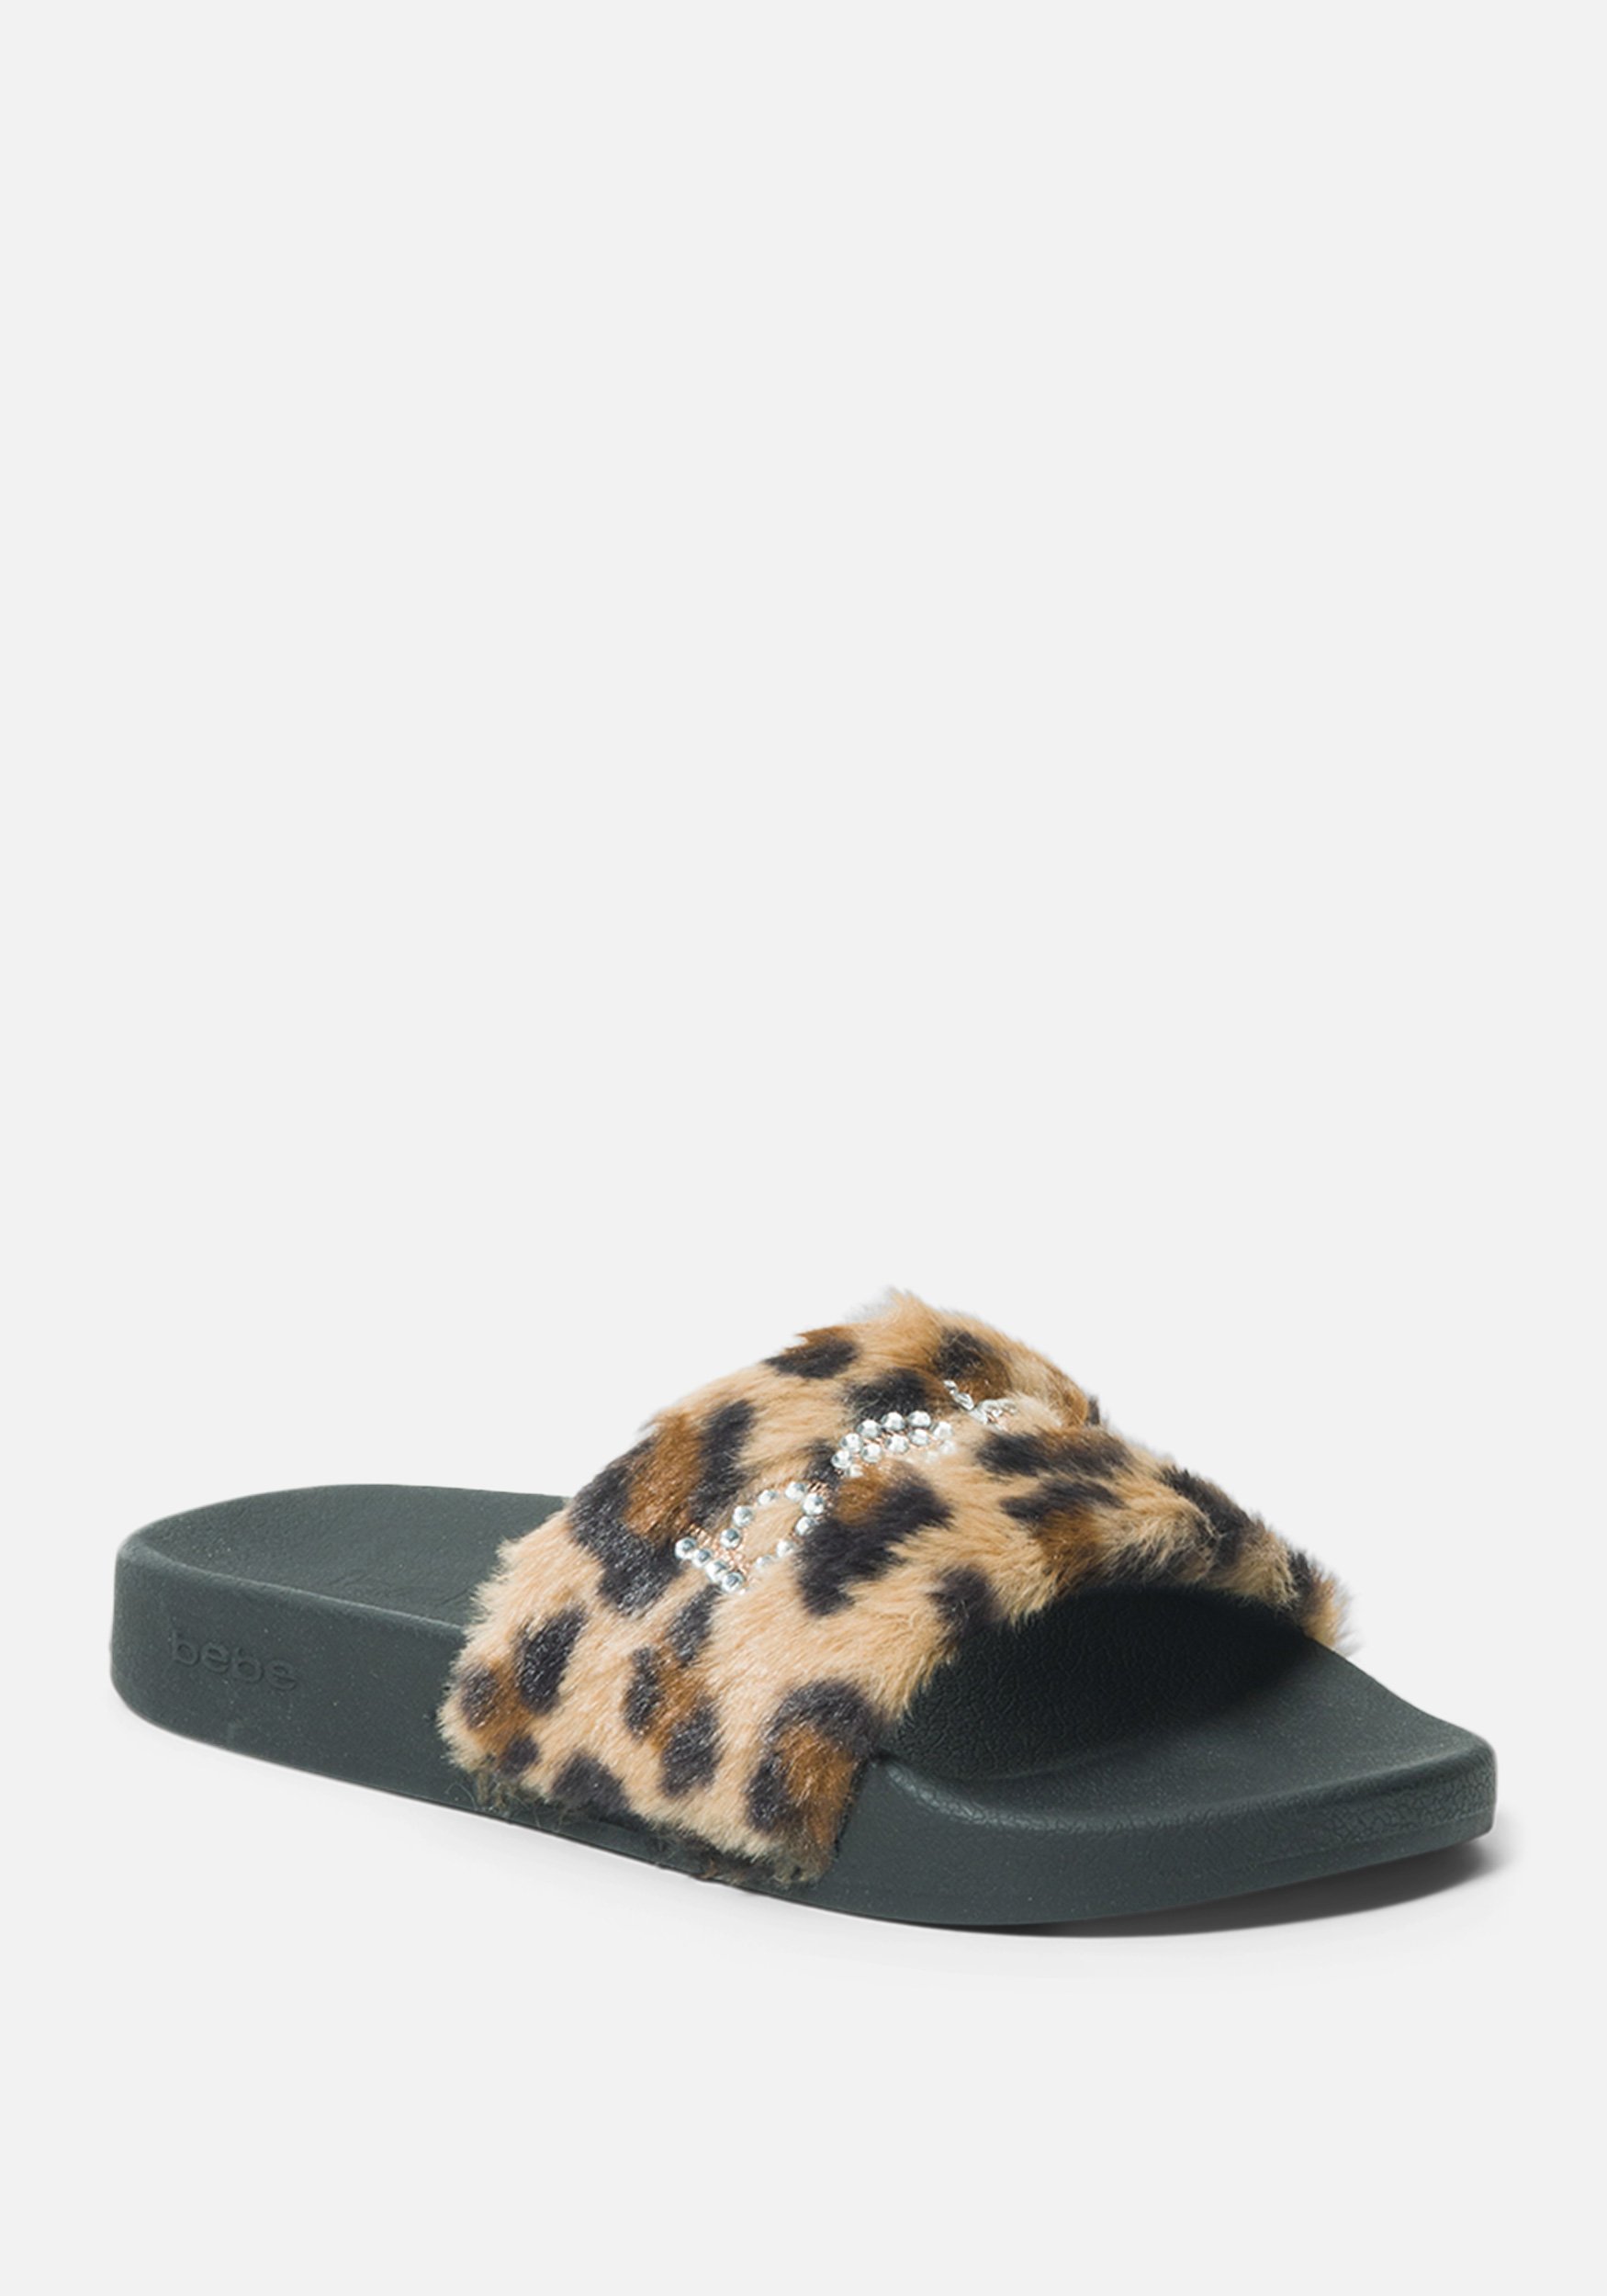 Bebe Women's Furiosa Faux Fur Slides Shoe, Size 11 in RETRO LEOPARD Synthetic